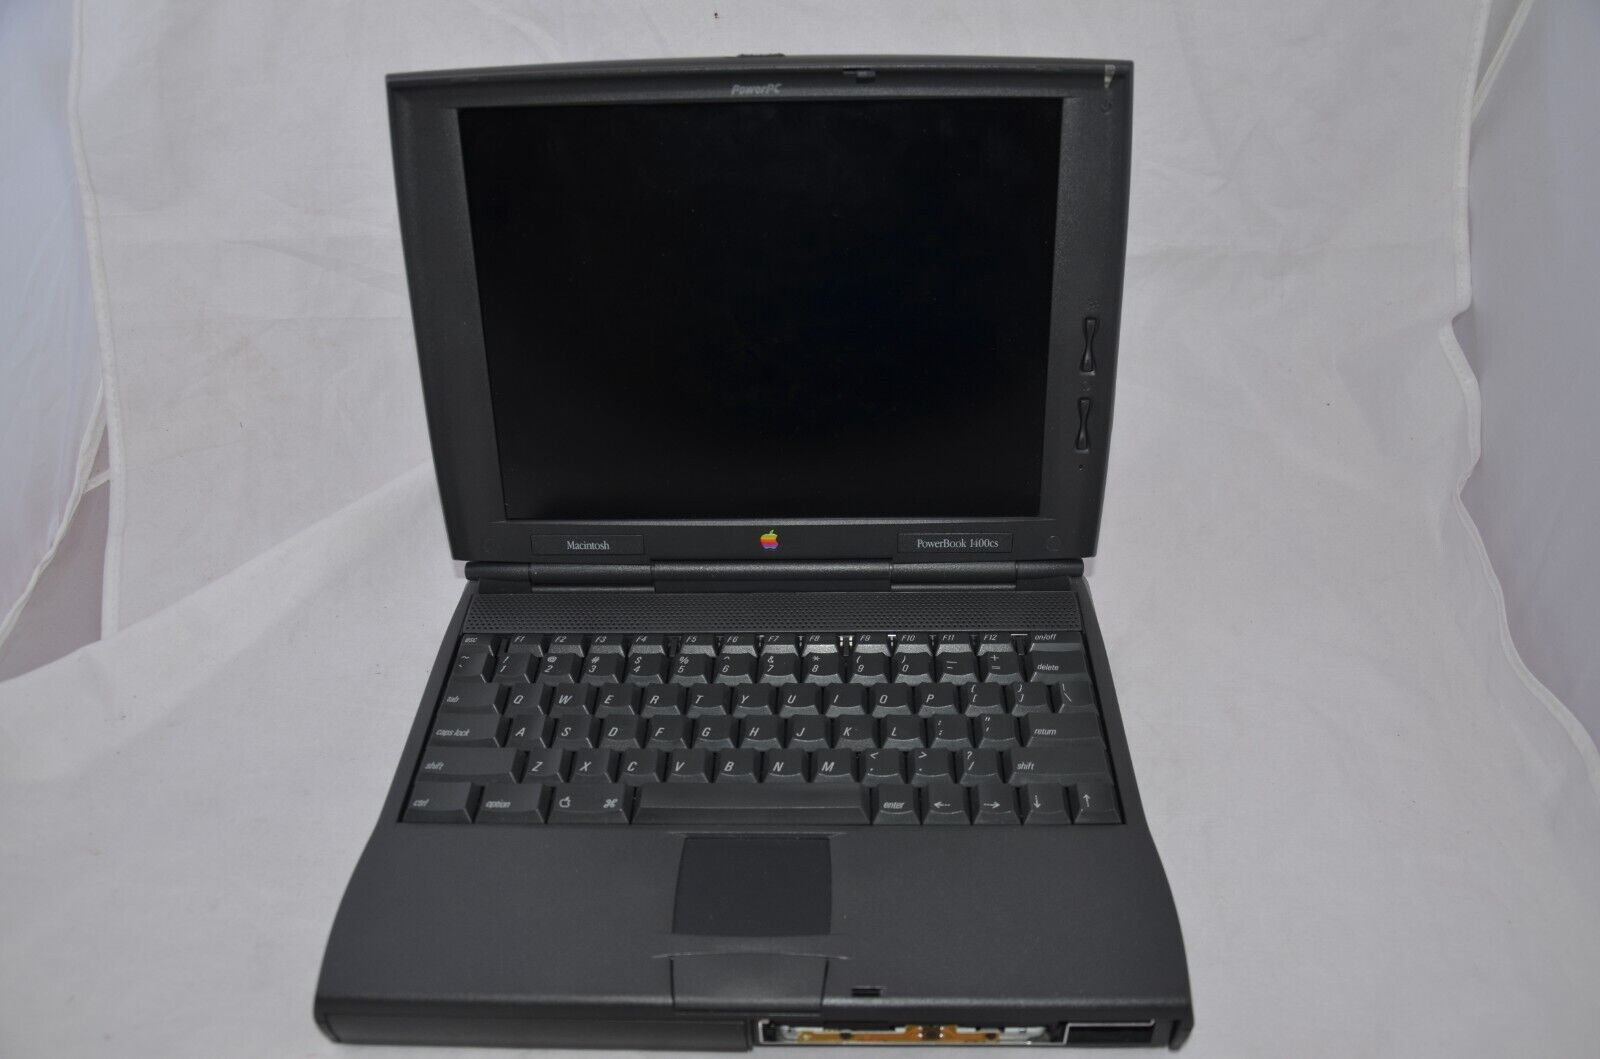 Vintage Apple Macintosh PowerBook 1400cs M3571 Laptop for Parts or Repair As Is